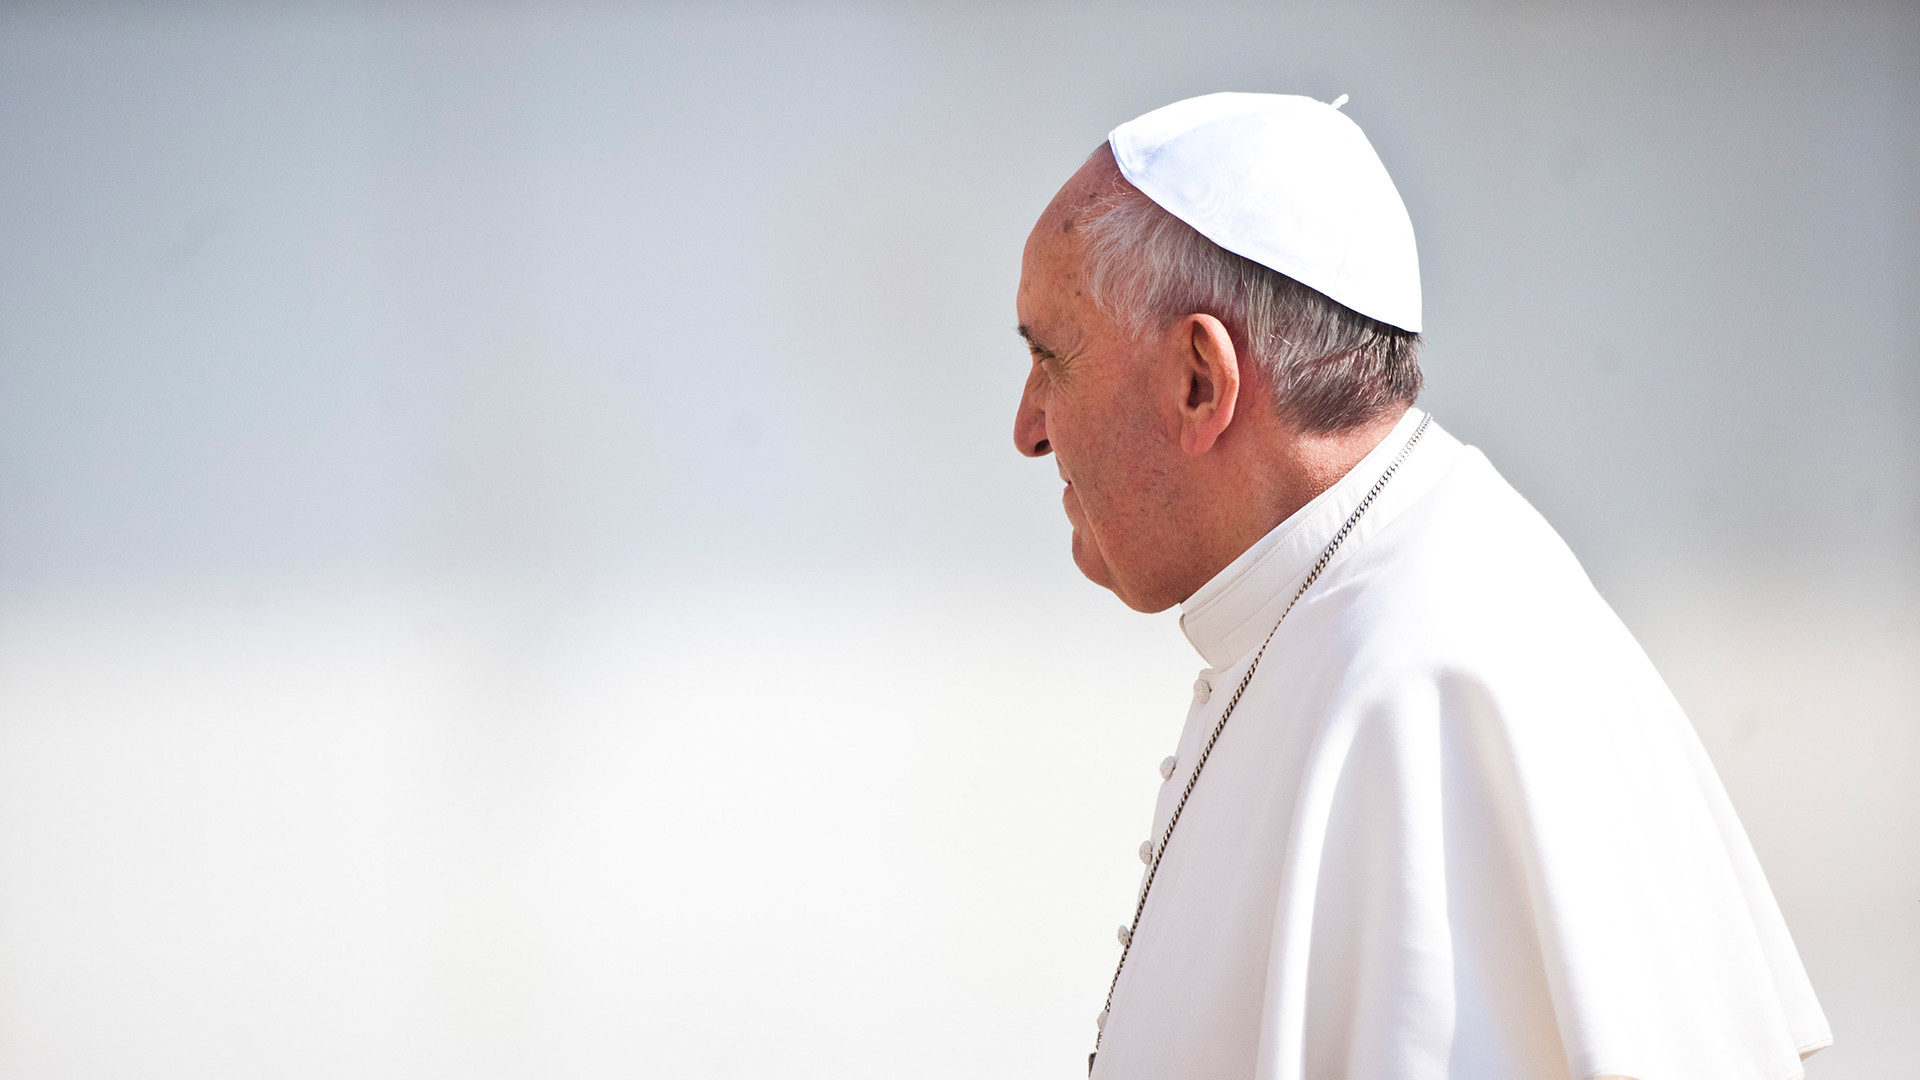 Le pape François exprime sa "vive douleur" suite au décès du cardinal Tucci (Photo: flickr/catholicism/CC BY-NC-SA 2.0)